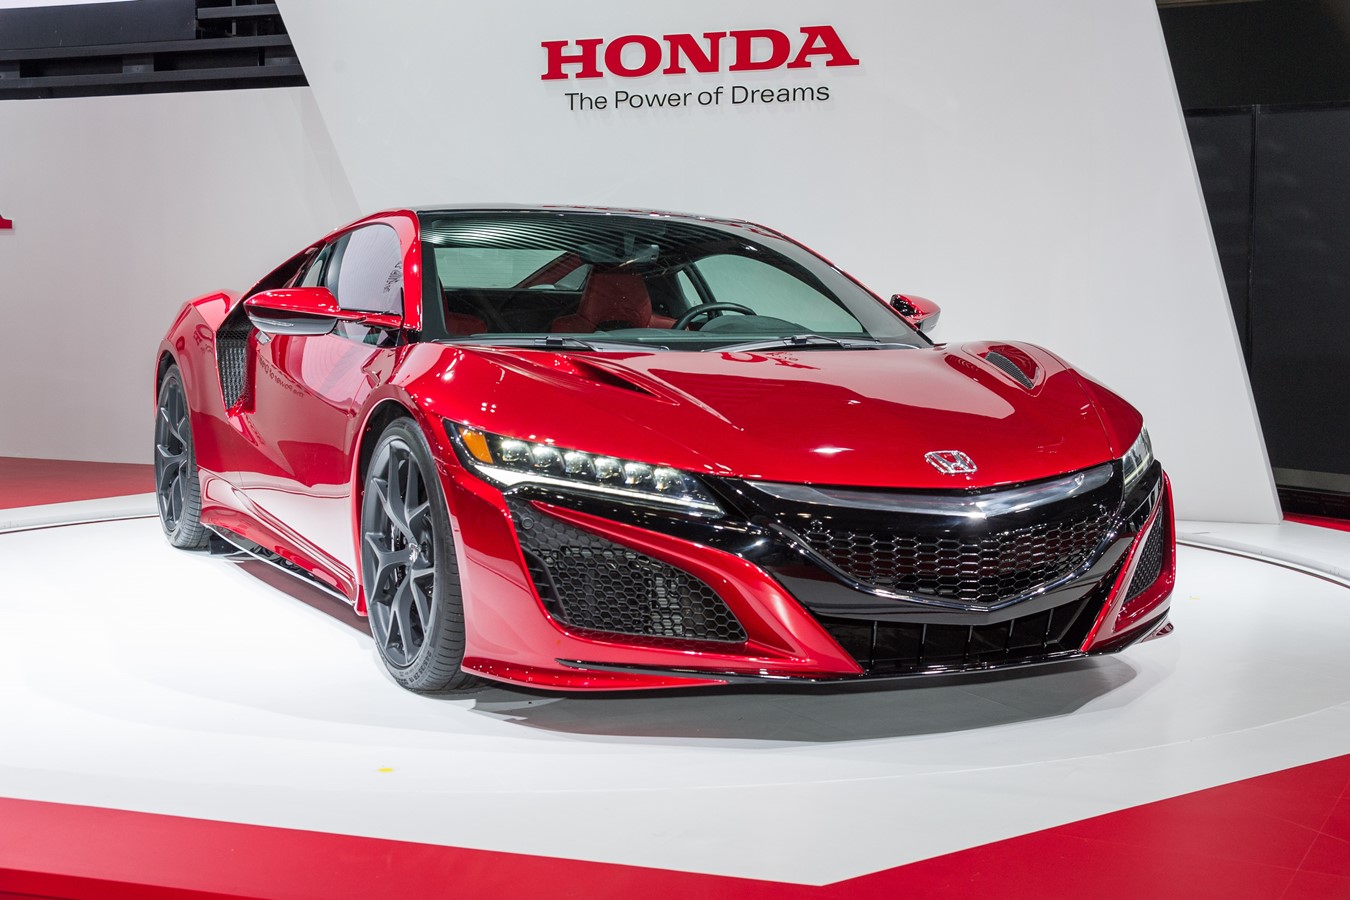 Honda News Roundup - October 2015